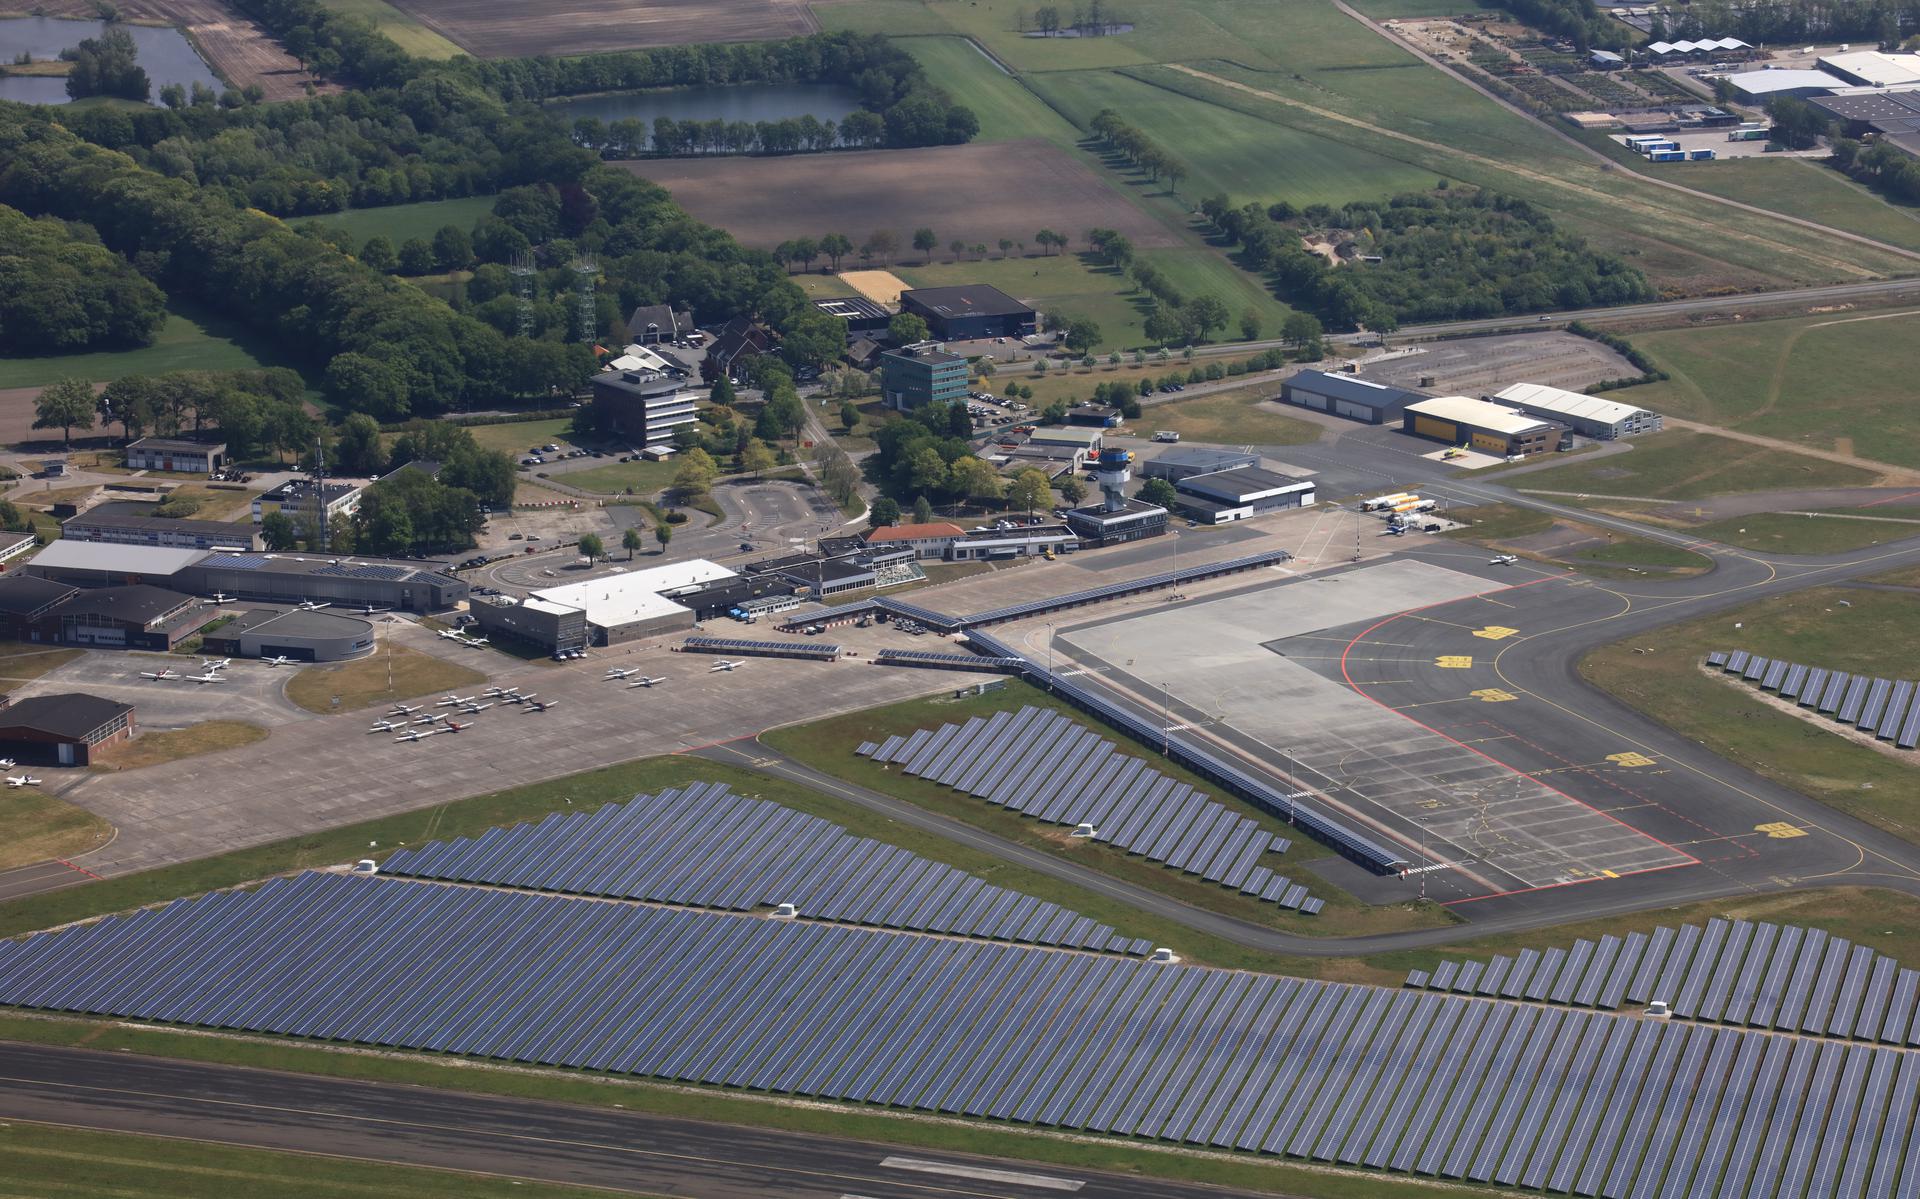 Groningen Airport Eelde met een zonnepark van 63.000 panelen is voorlopig nog het domein van de luchtvaart. Als het aan GroenLinks ligt, verandert het luchthaventerrein in een woonwijk met 4000 tot 5000 huizen.